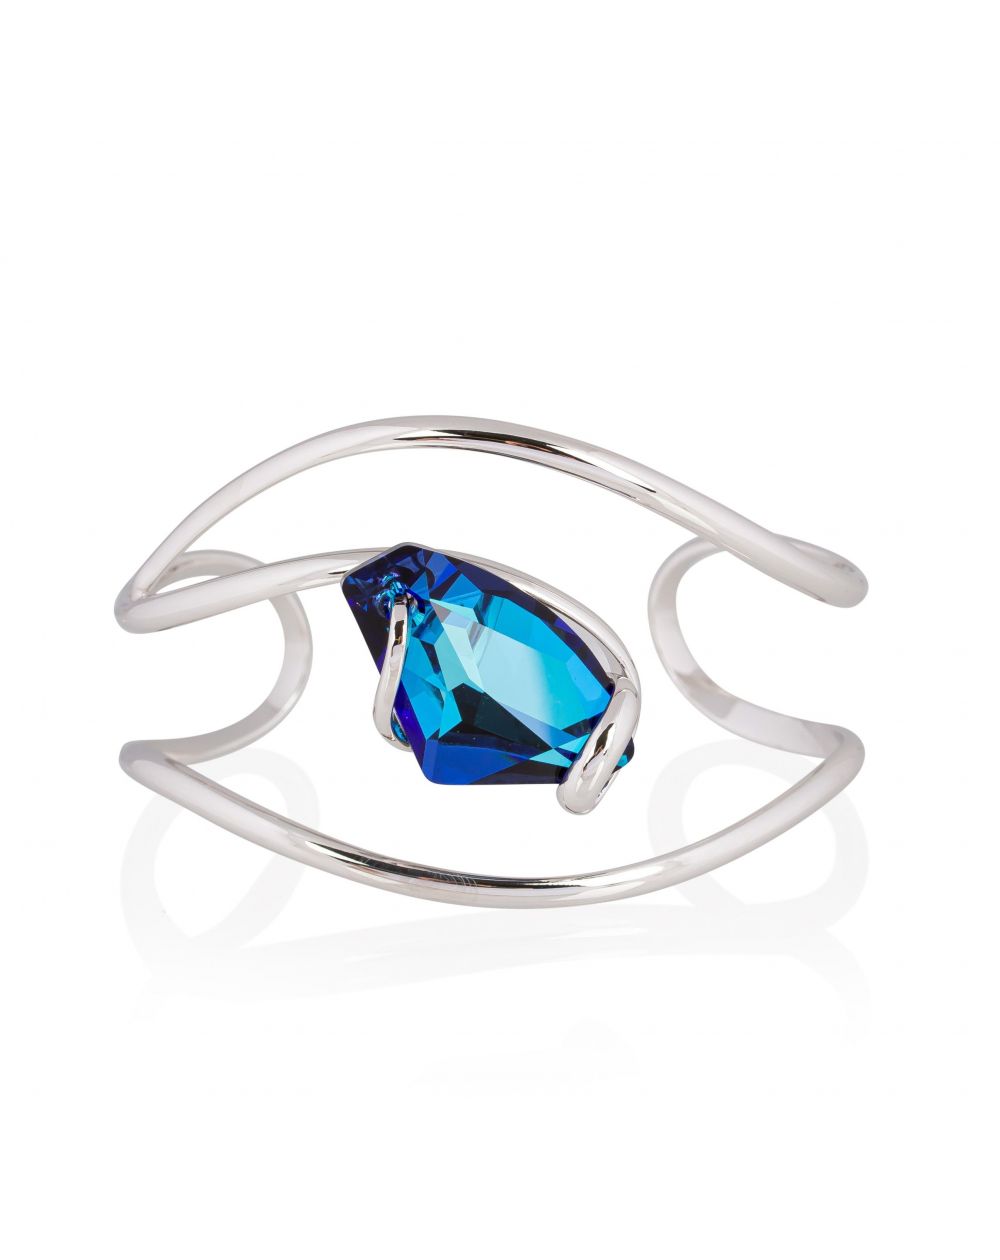 Andrea Marazzini bijoux - Bracelet cristal Swarovski Galactic Bermuda Blu